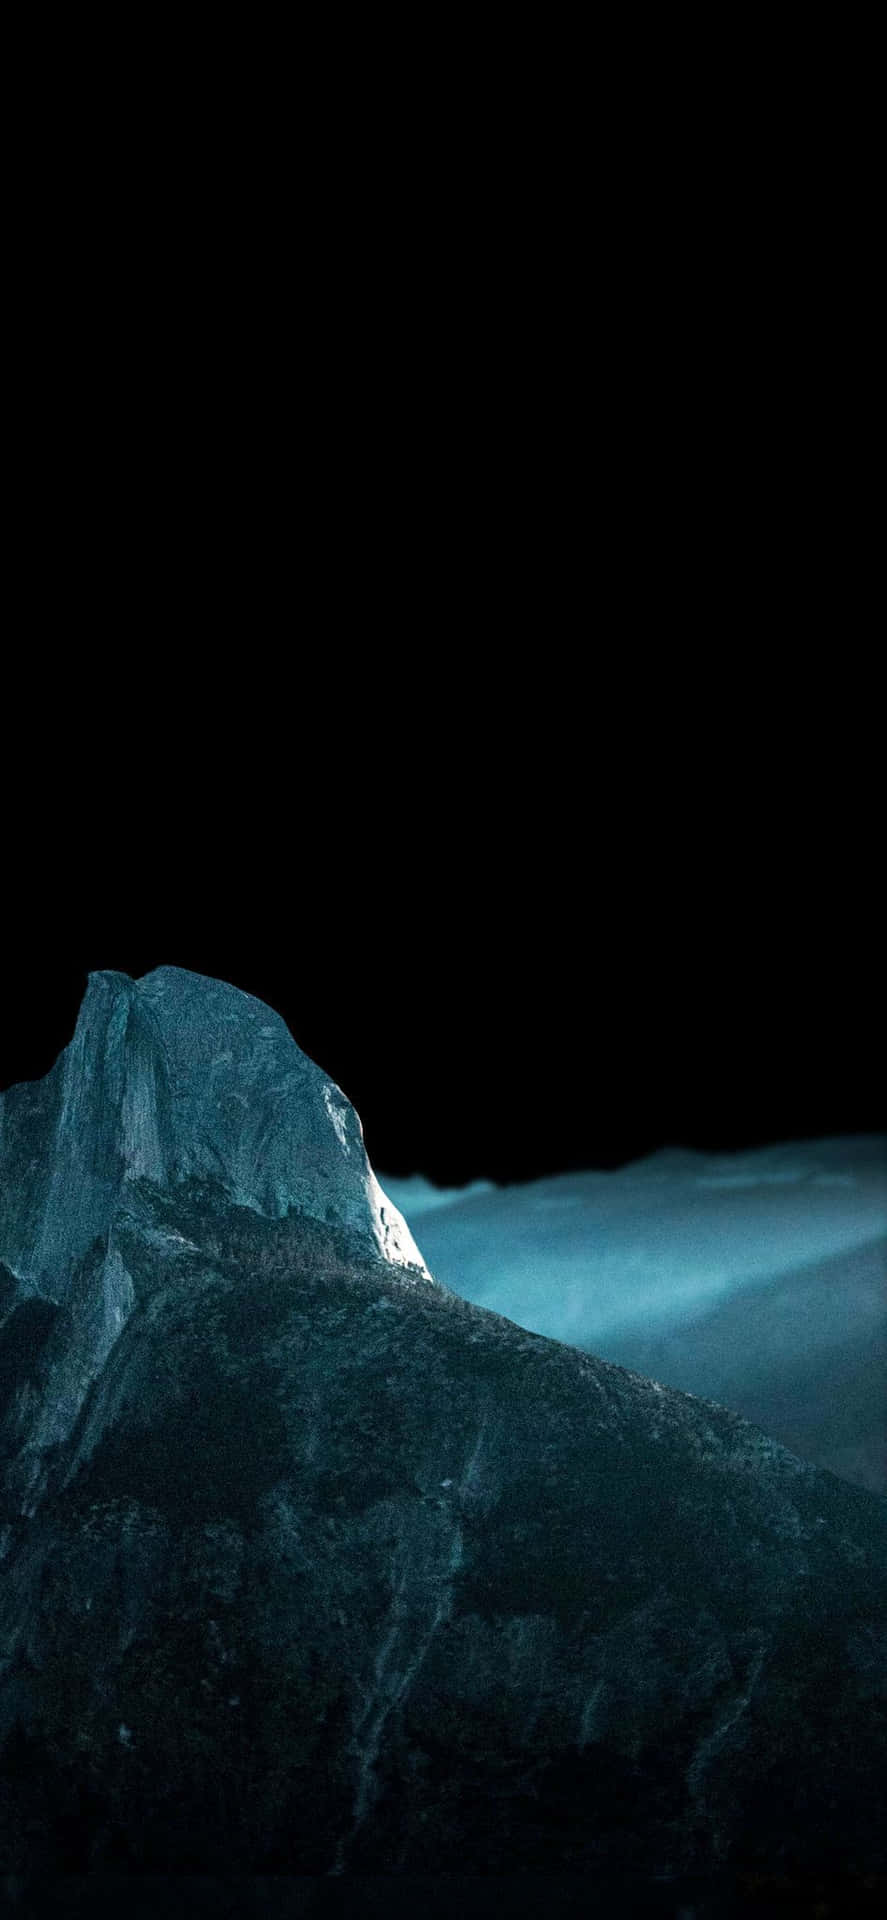 Sfondoper Iphone Xs Oled Con L'immagine Di Un Iceberg